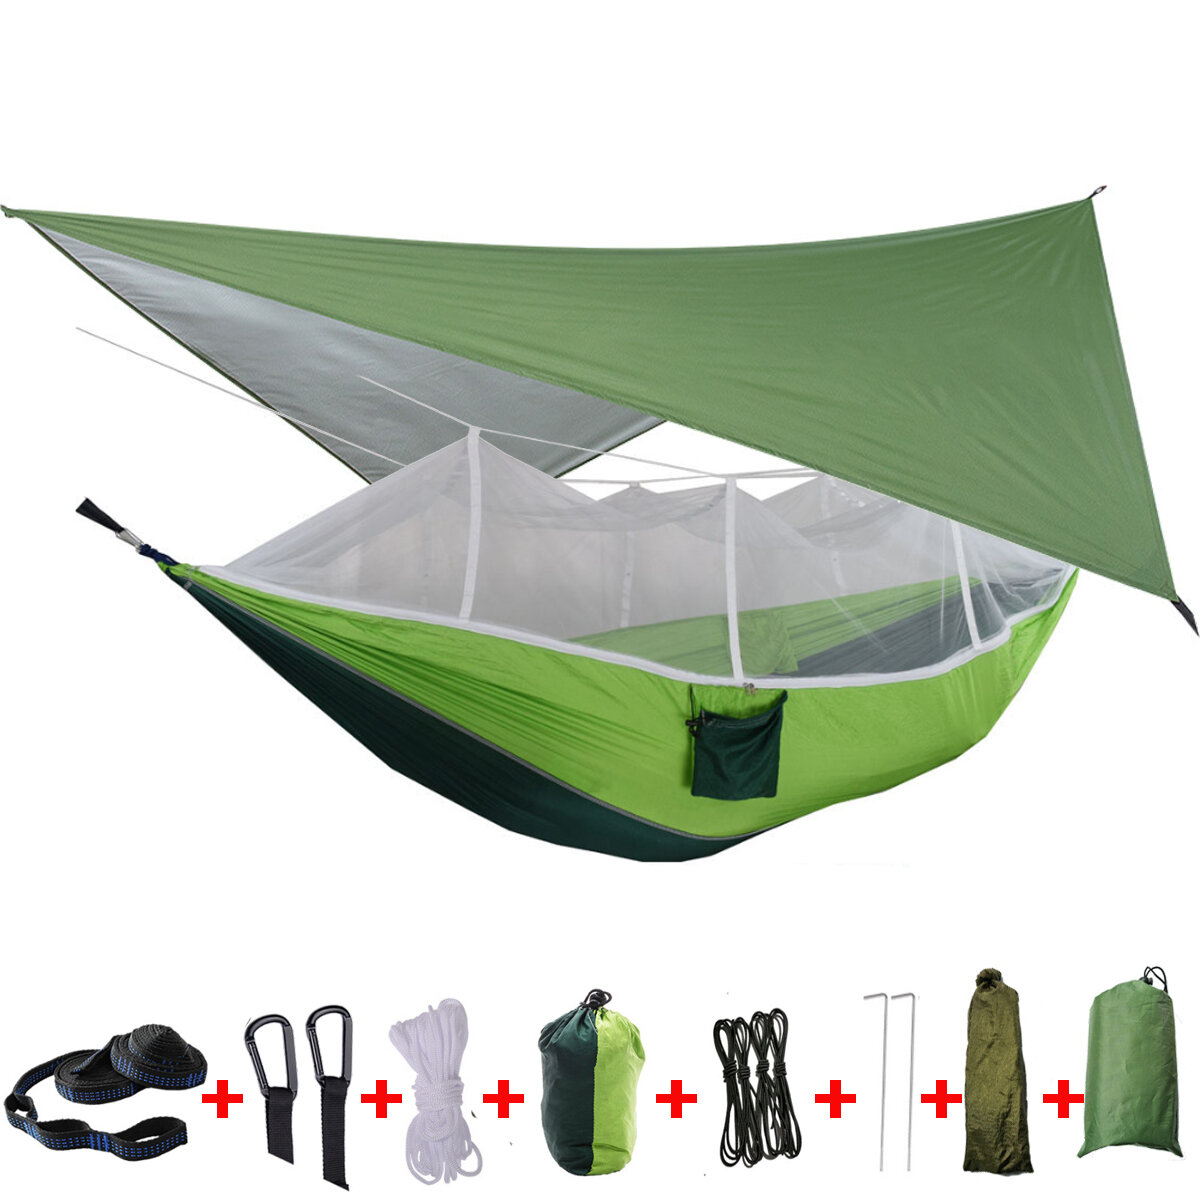 IPRee® 2 Kişilik Kamp Hamak Çadırı Sivrisinek Ağı, Yağmurluk Tarp Örtüsü ve Çift Asılı Yatak ile Açık Hava Seyahatleri İçin